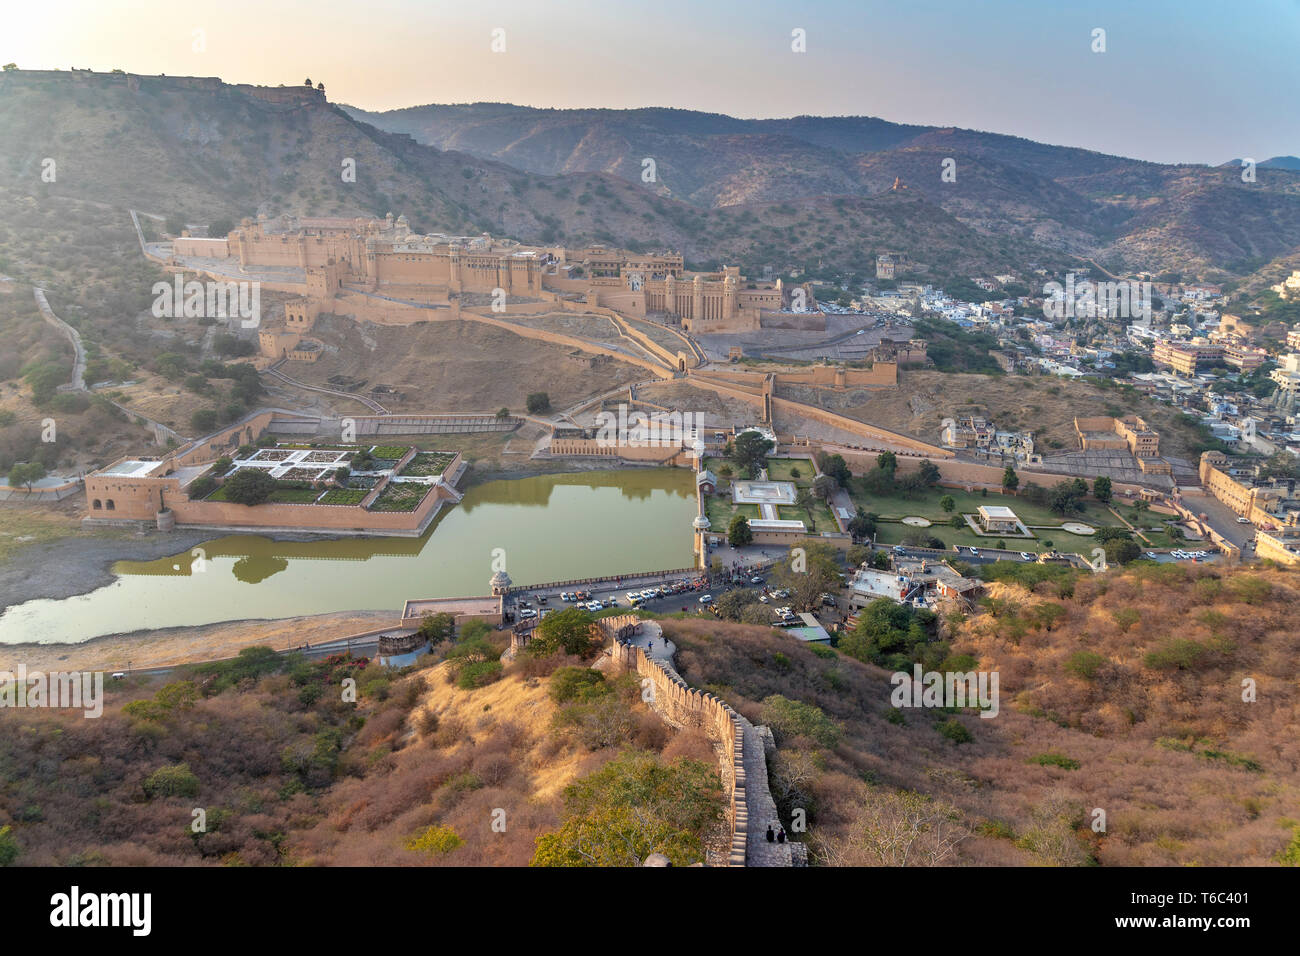 Indien, Rajasthan, Jaipur, Amber, Amber Fort und Wand Befestigungen Stockfoto